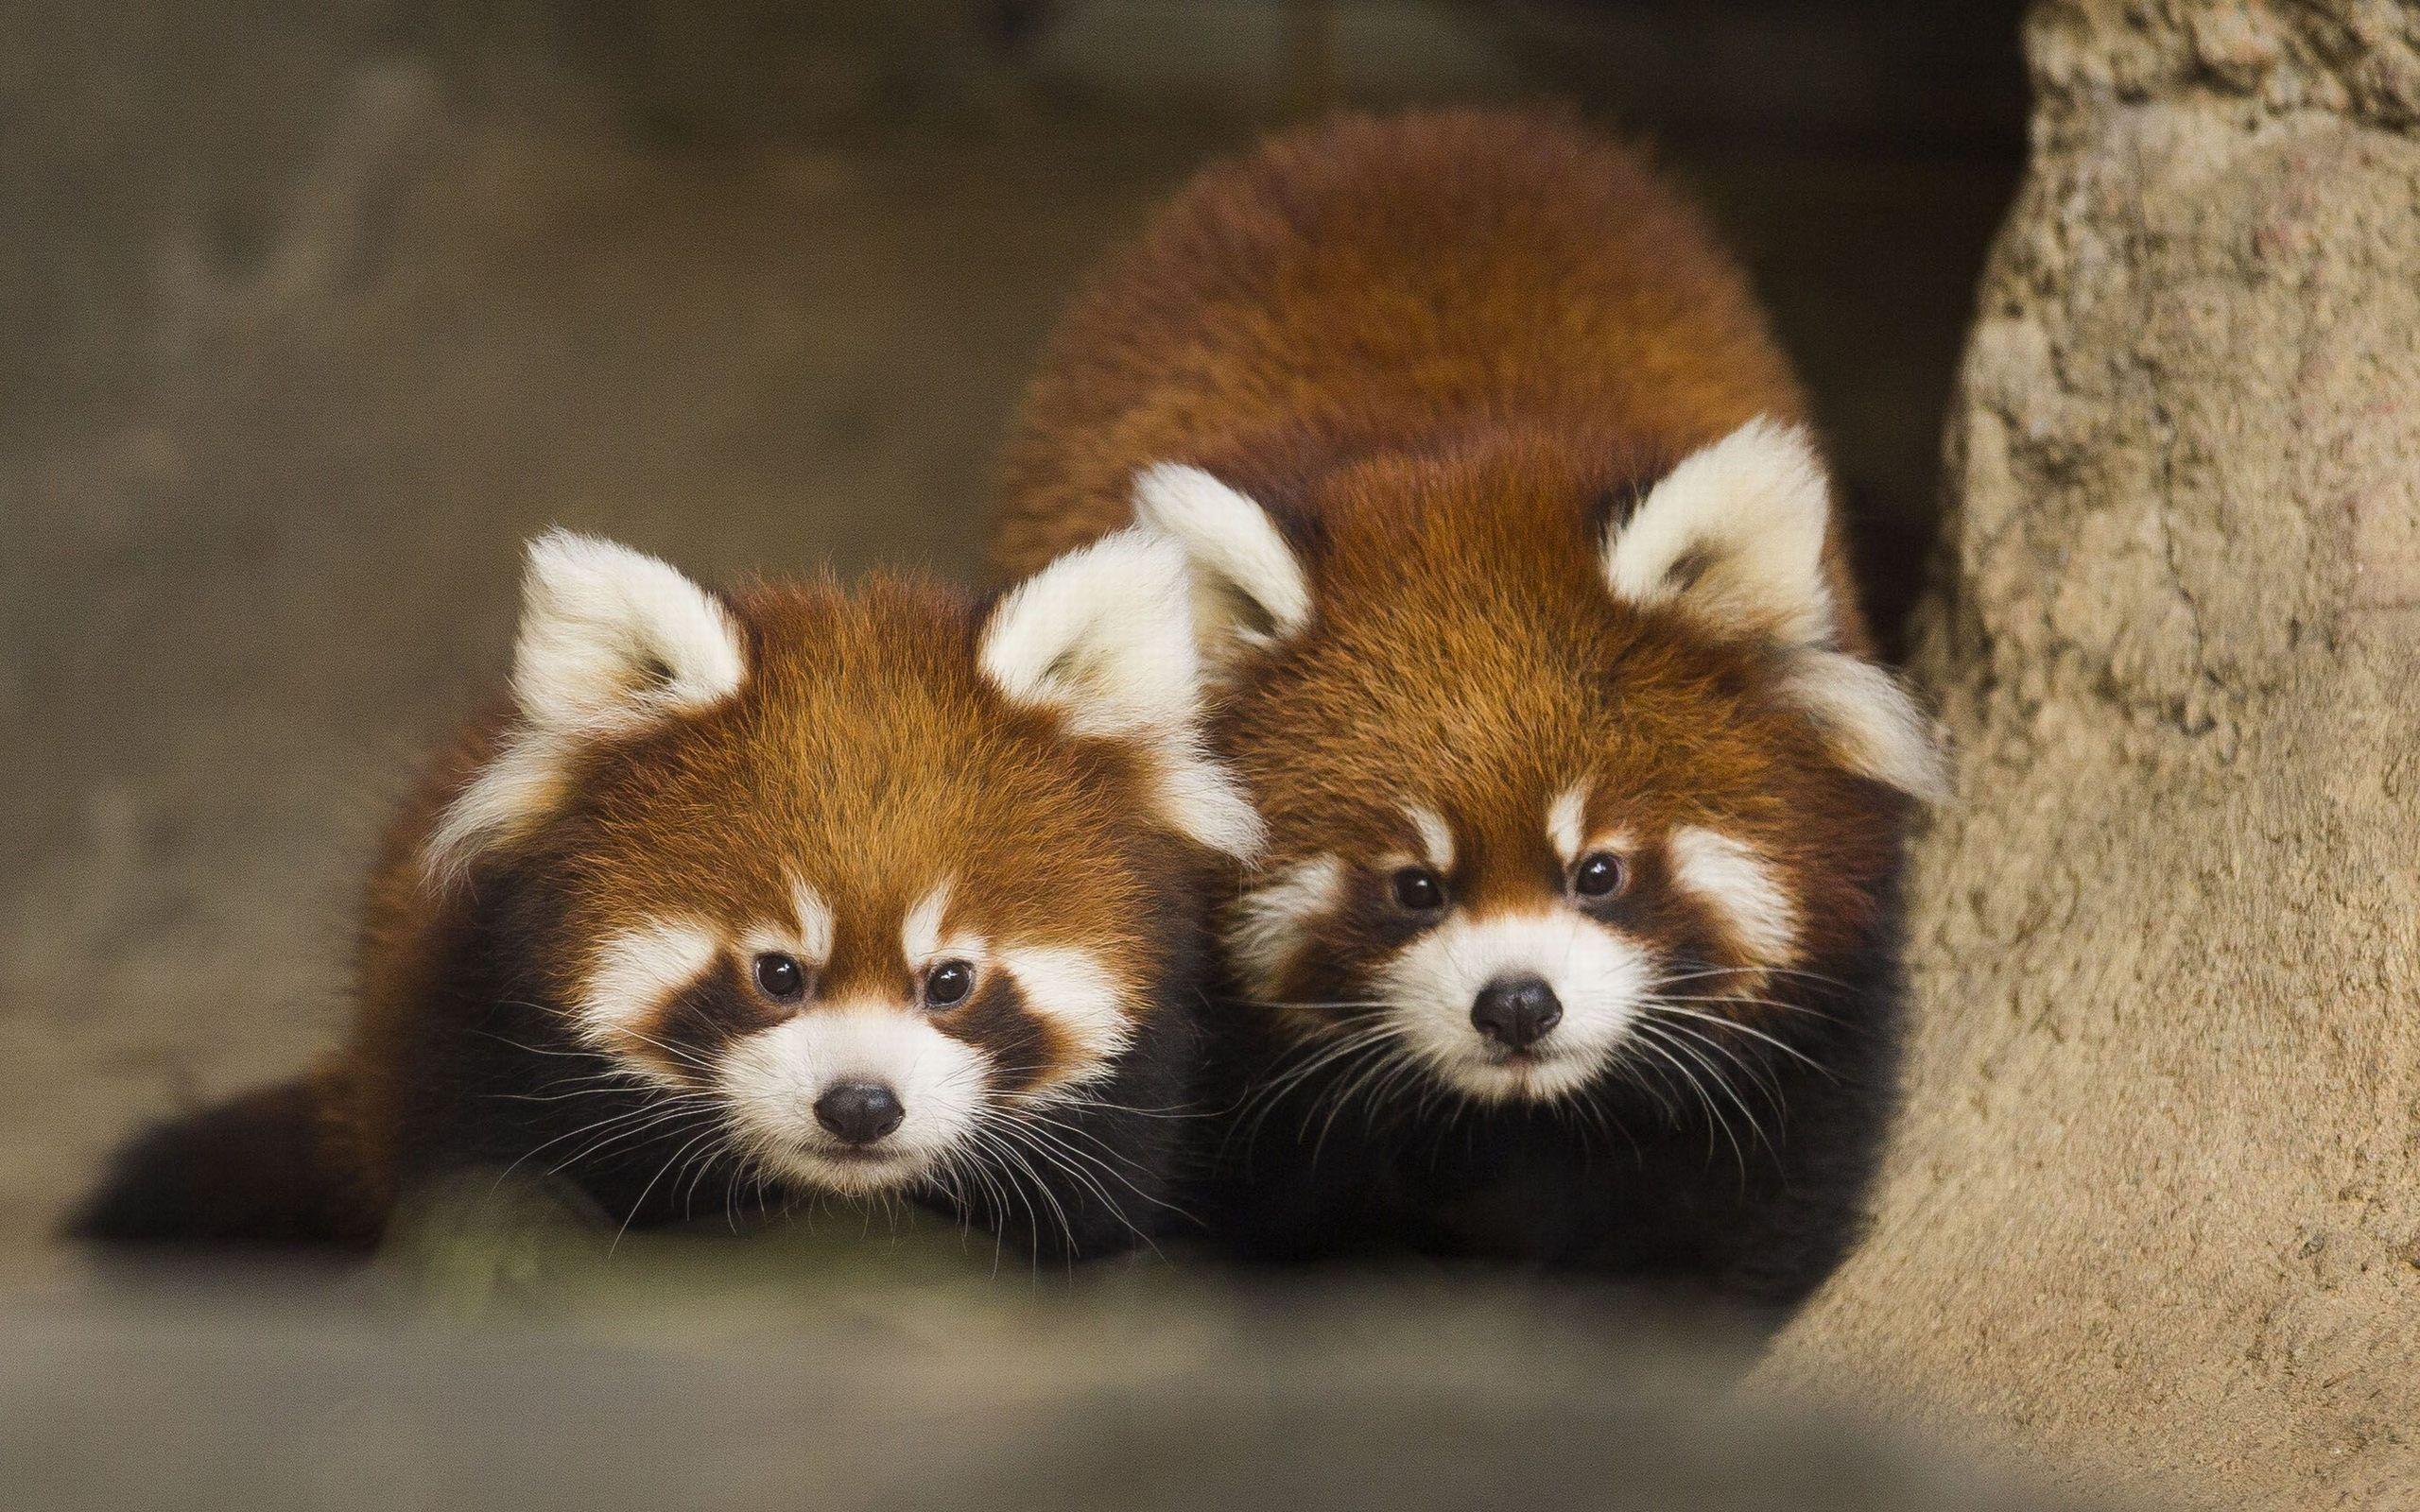 Cute Red Panda Wallpaper HD For Desktop Of Cute Animal. Red Pandas